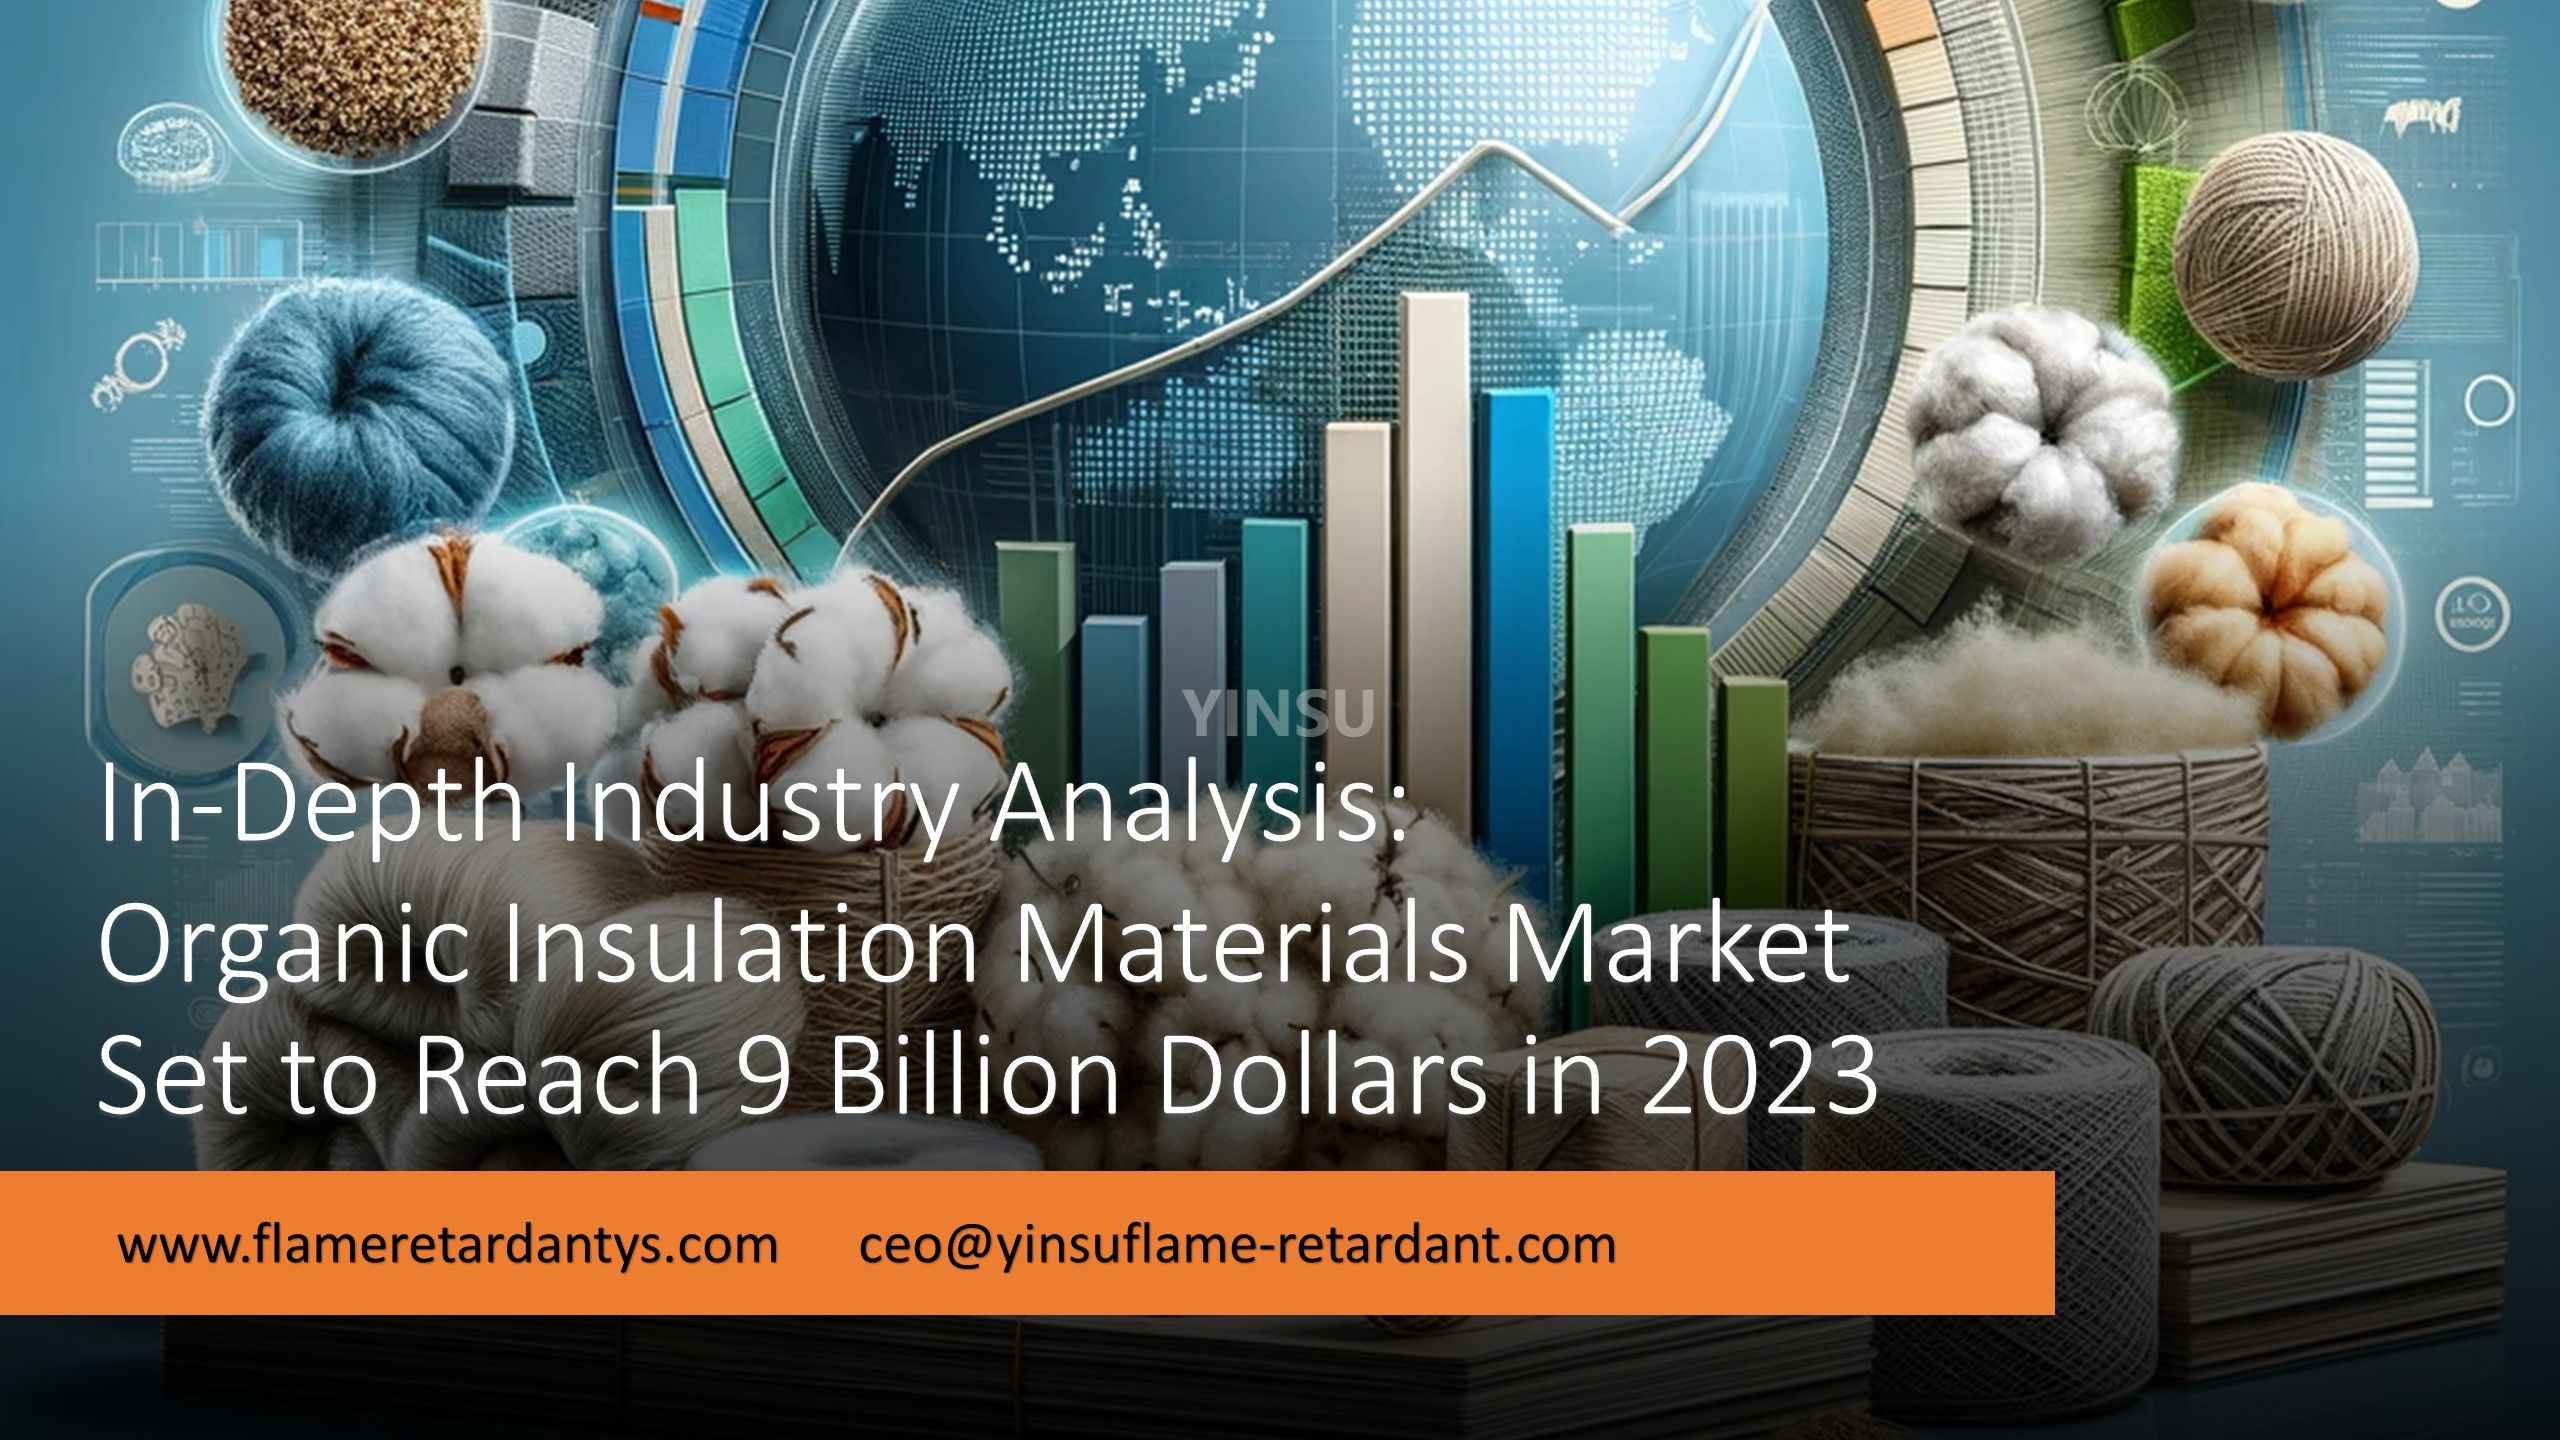 Углубленный отраслевой анализ: рынок органических изоляционных материалов достигнет 9 миллиардов долларов в 2023 году